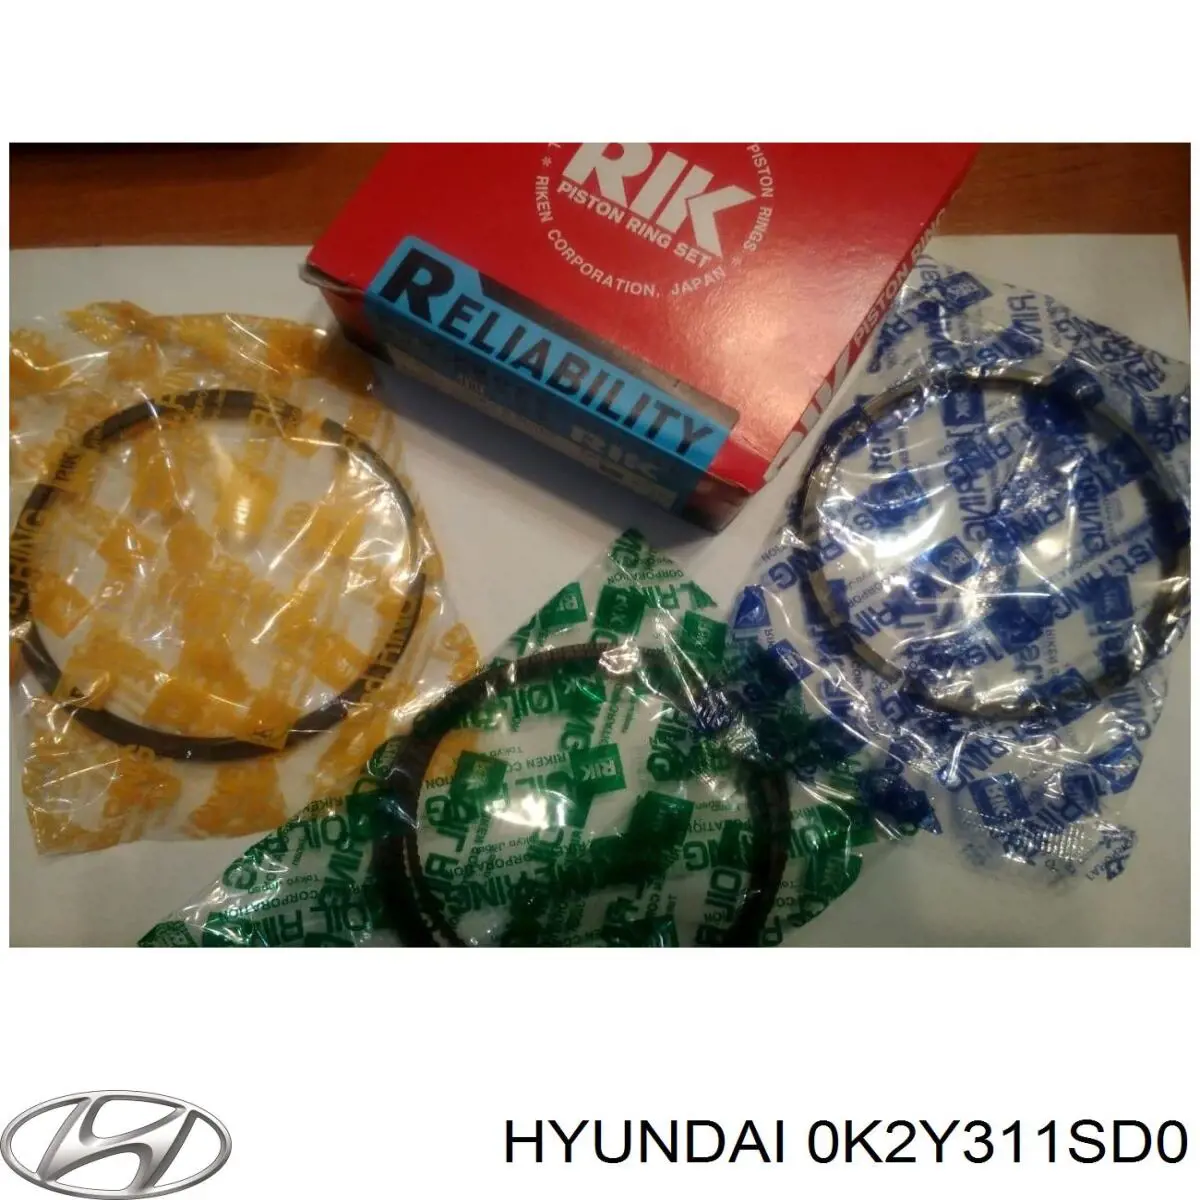 0K2Y311SD0 Hyundai/Kia juego de aros de pistón de motor, cota de reparación +0,25 mm